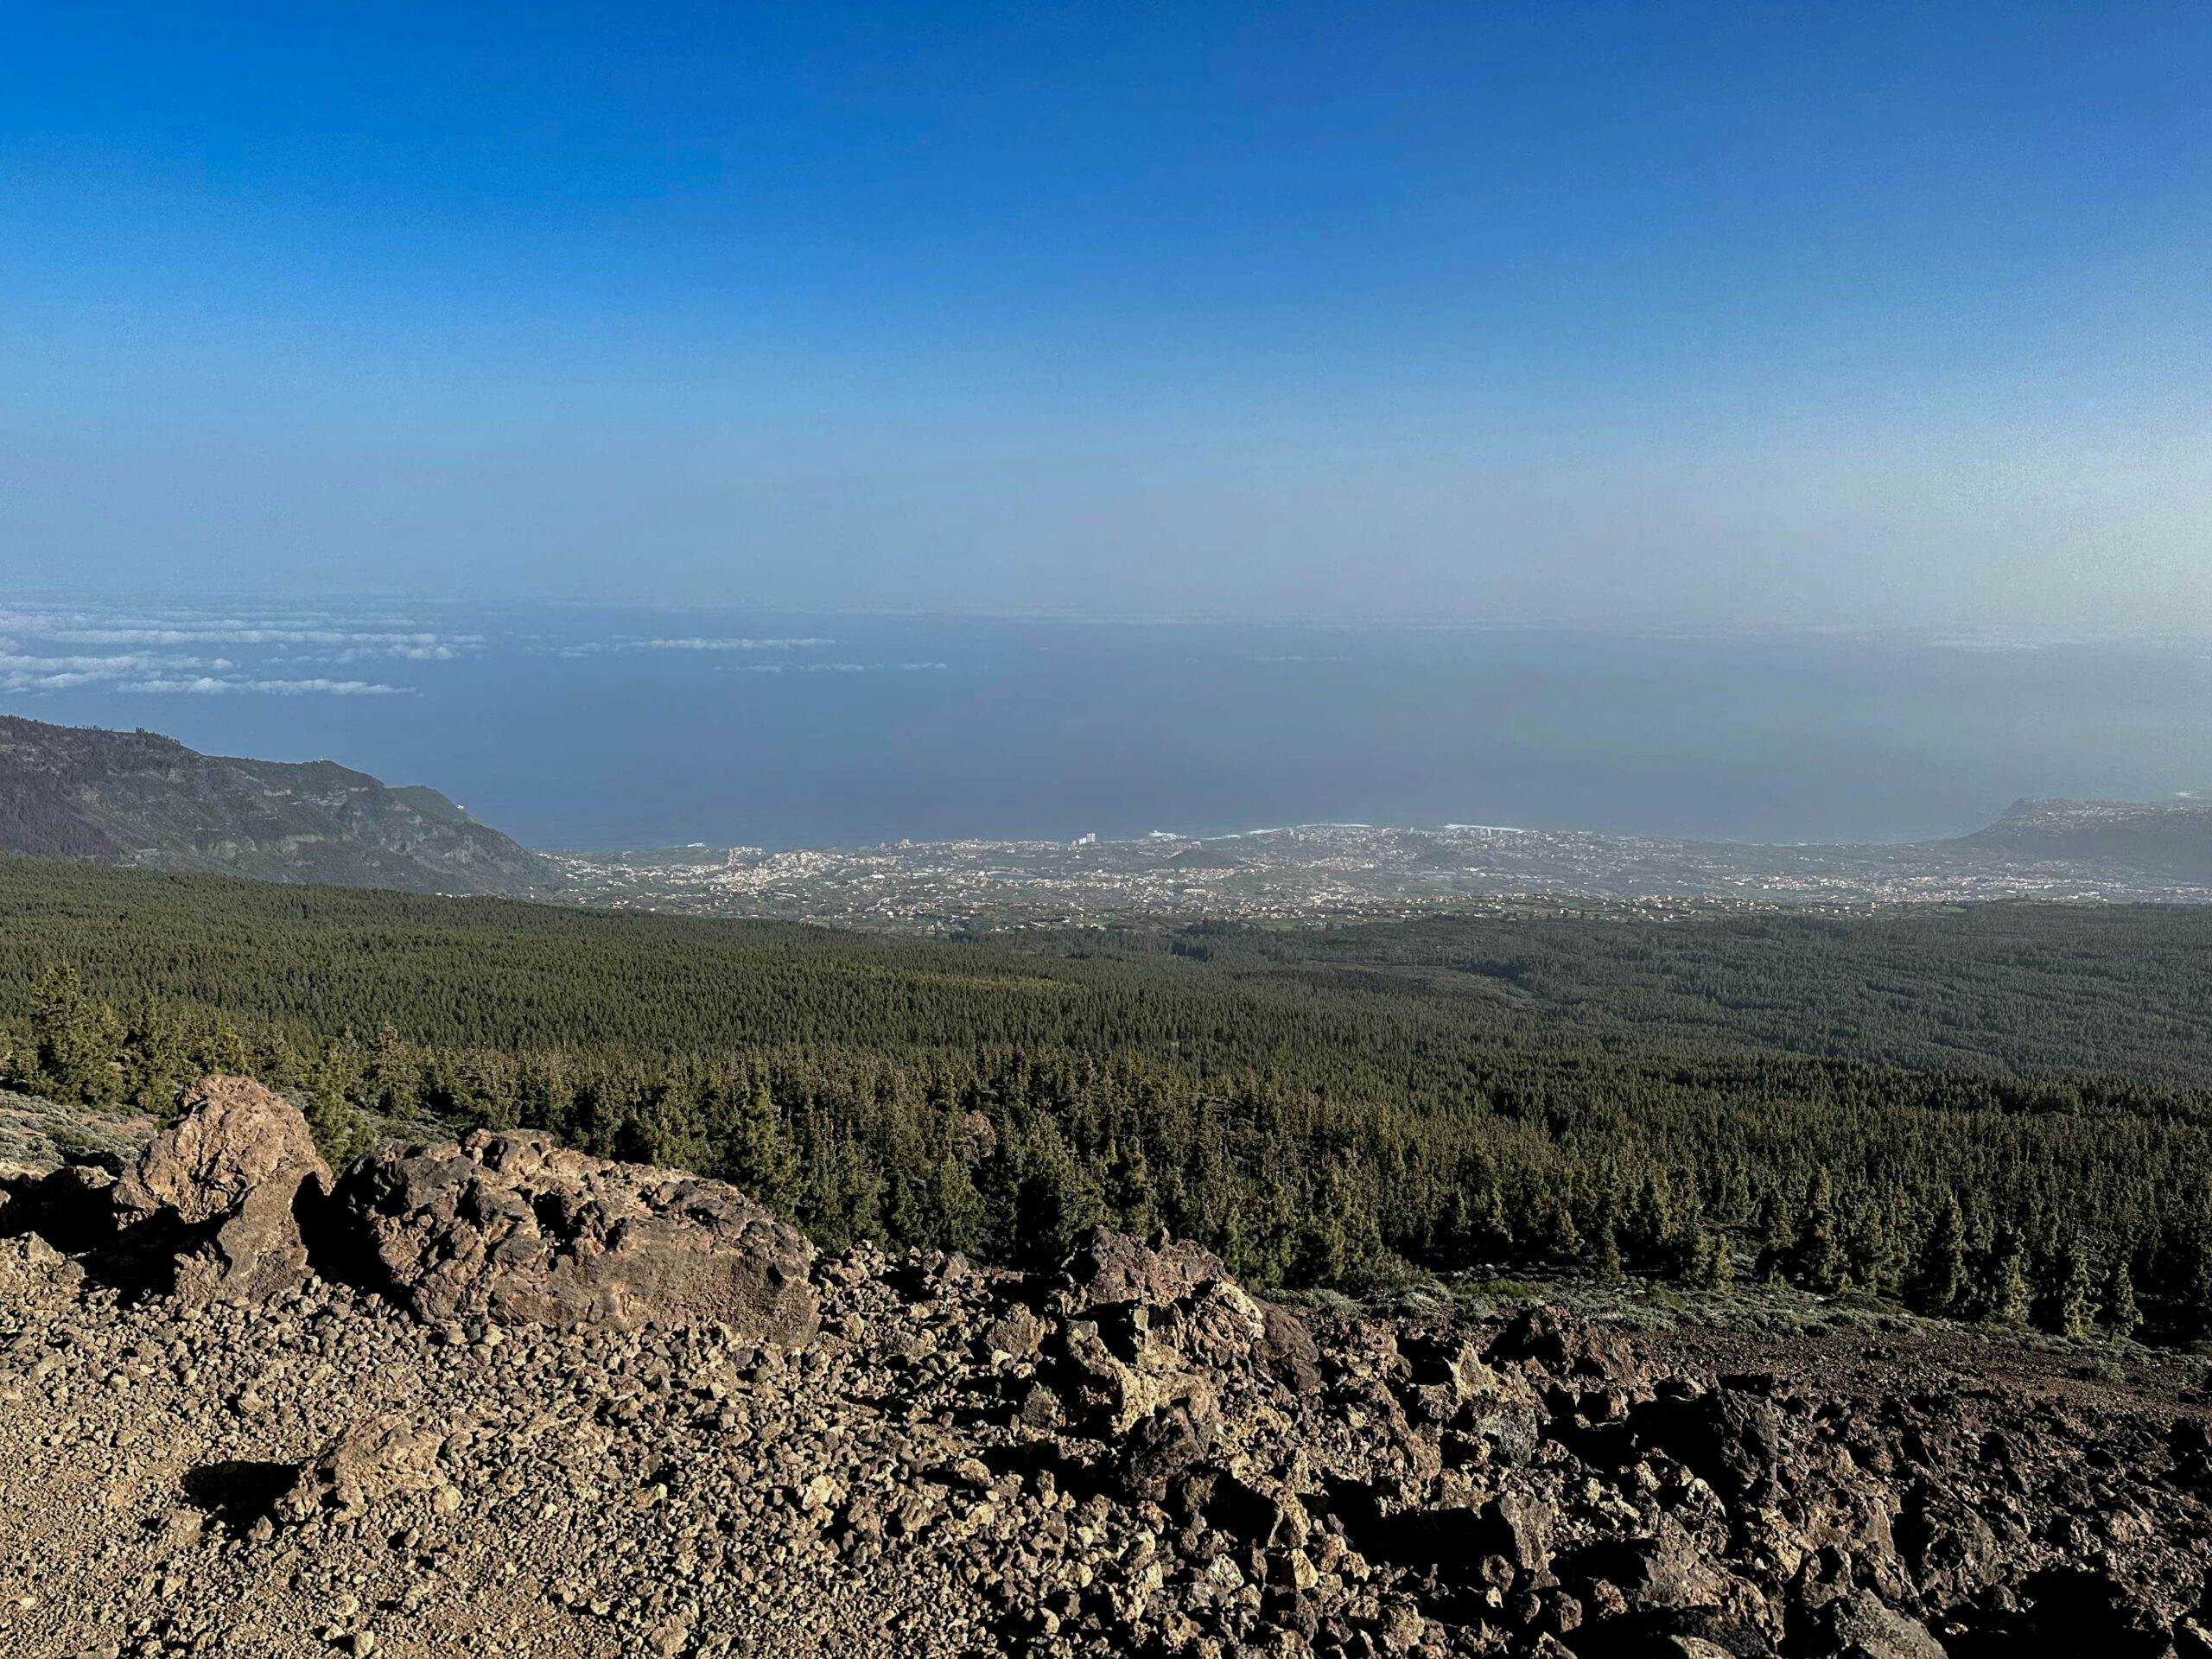 View from El Alto de Guamaso to the north coast of Tenerife